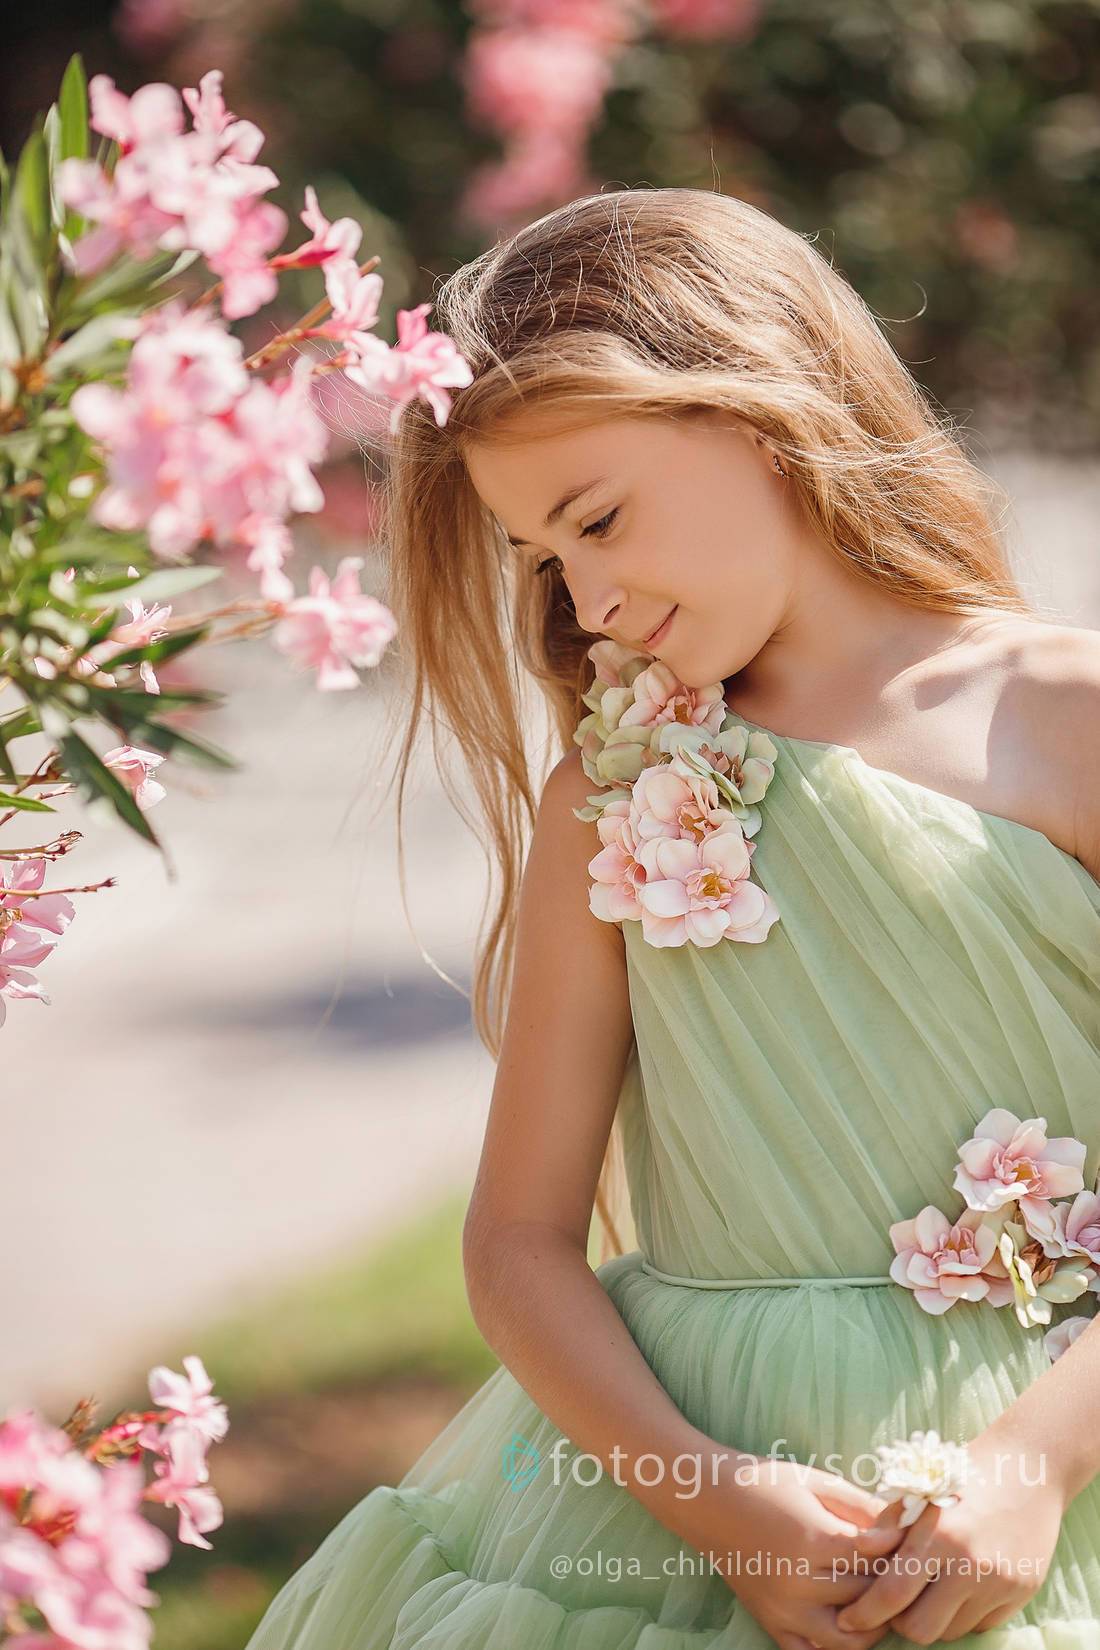 Девочка в зеленом платье у куста с розовыми цветами